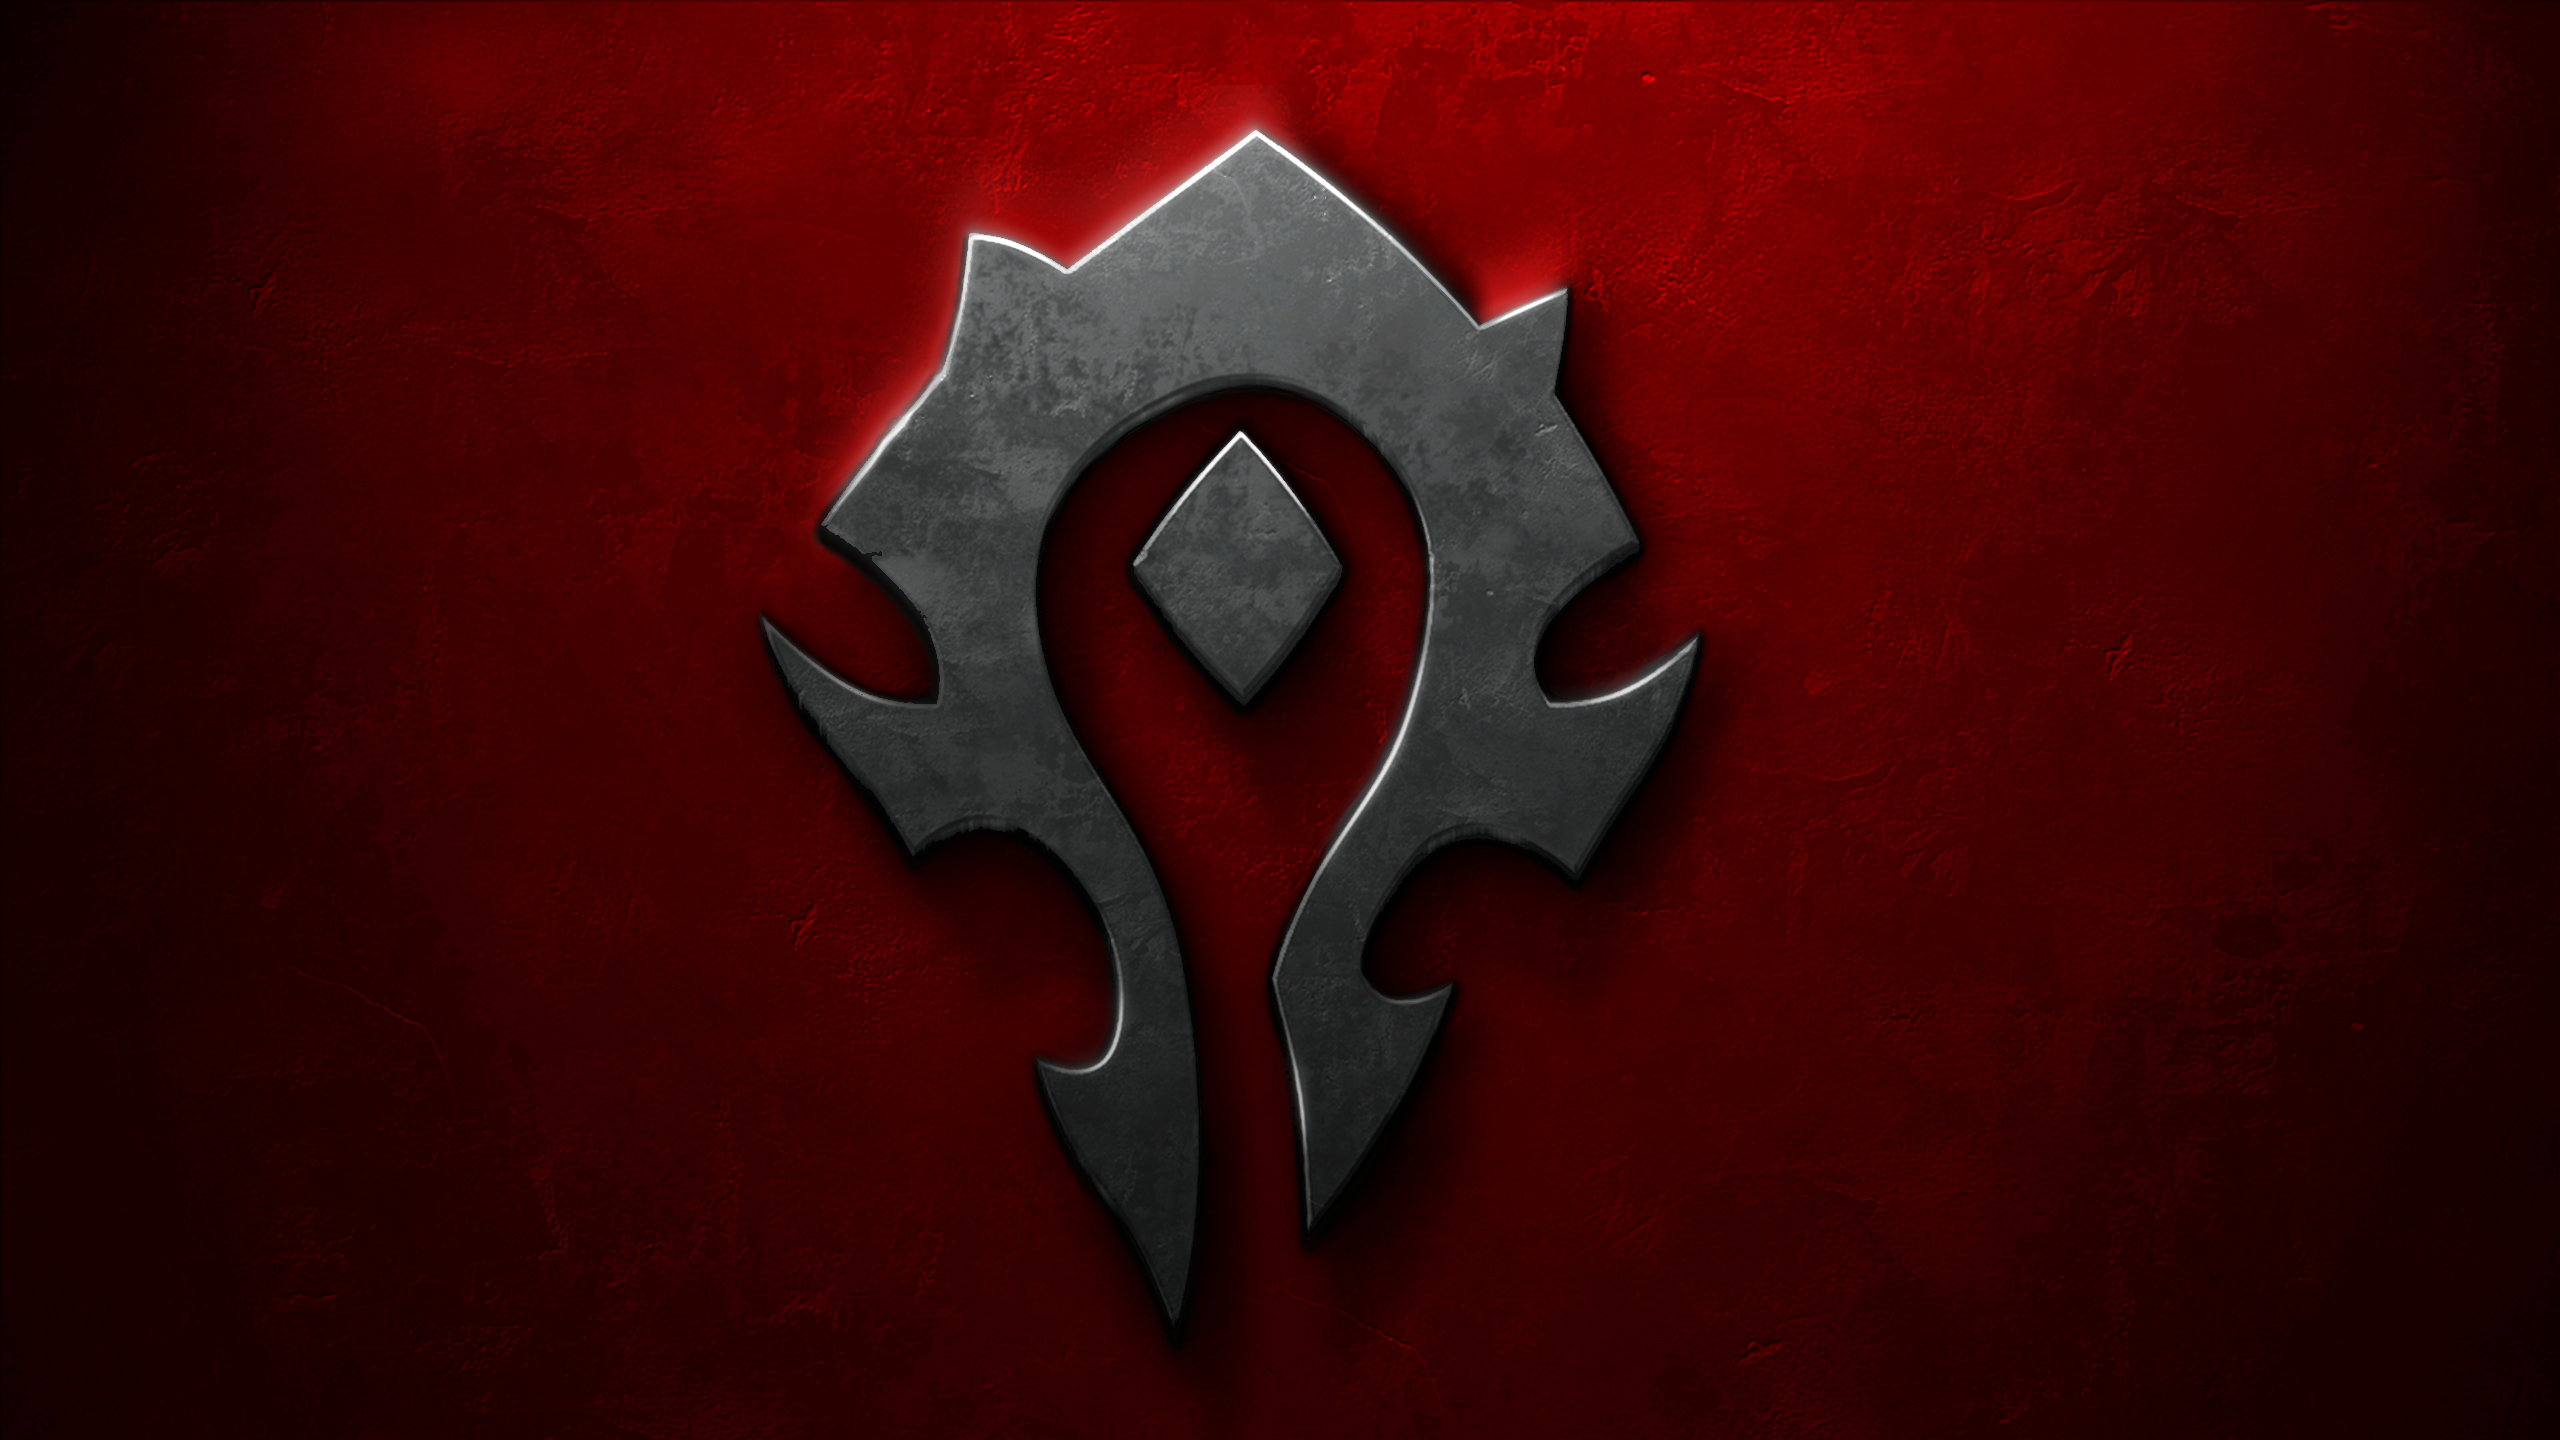 World of Warcraft - Horde Symbol